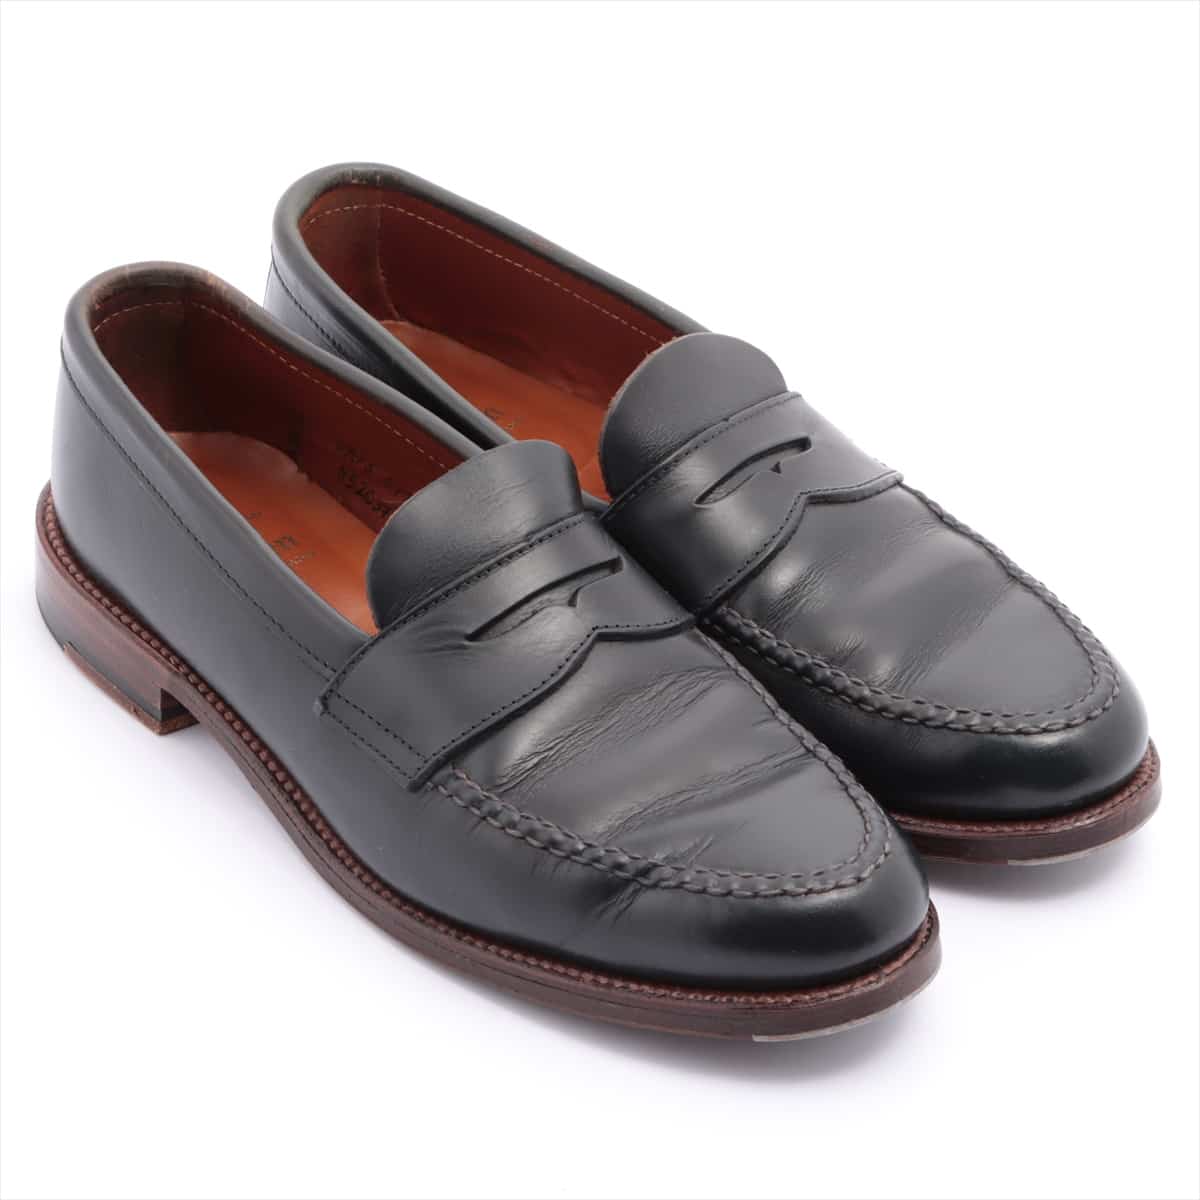 Alden Leather Loafer 7.5 Men's Black 5203